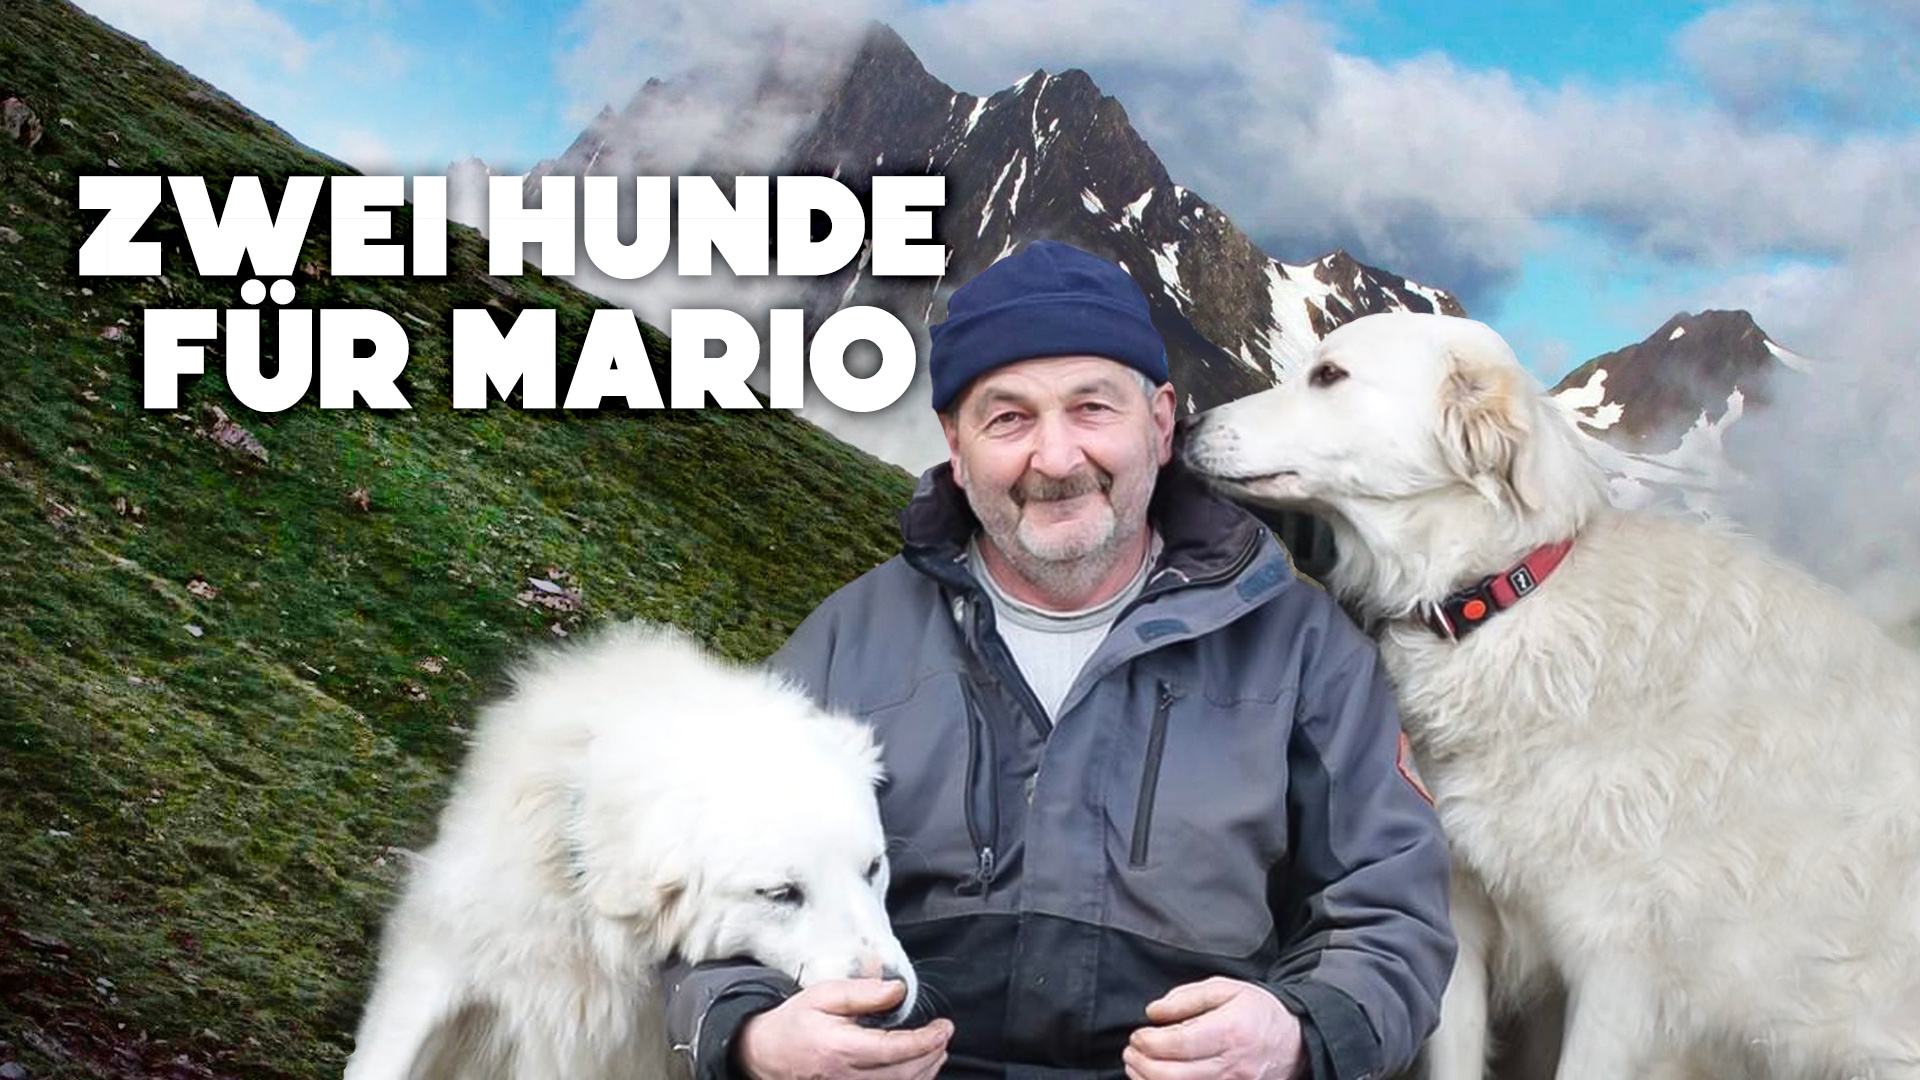 Zwei Hunde für Mario